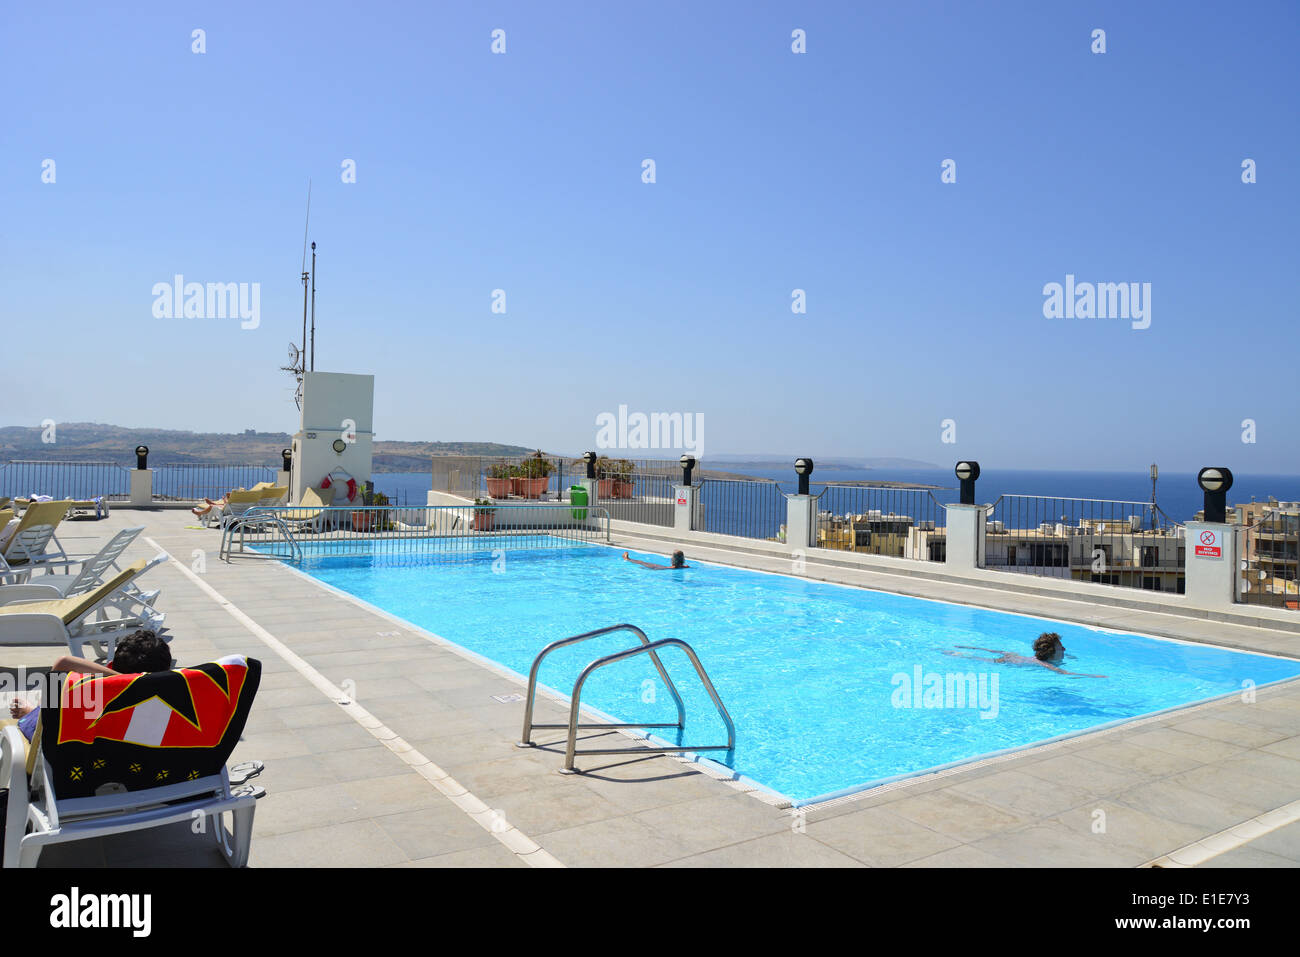 Hôtel Santana piscine du toit, Qawra (Il-Qawra), Saint Paul's Bay, quartier Nord, Malte Majjistral, République de Malte Banque D'Images